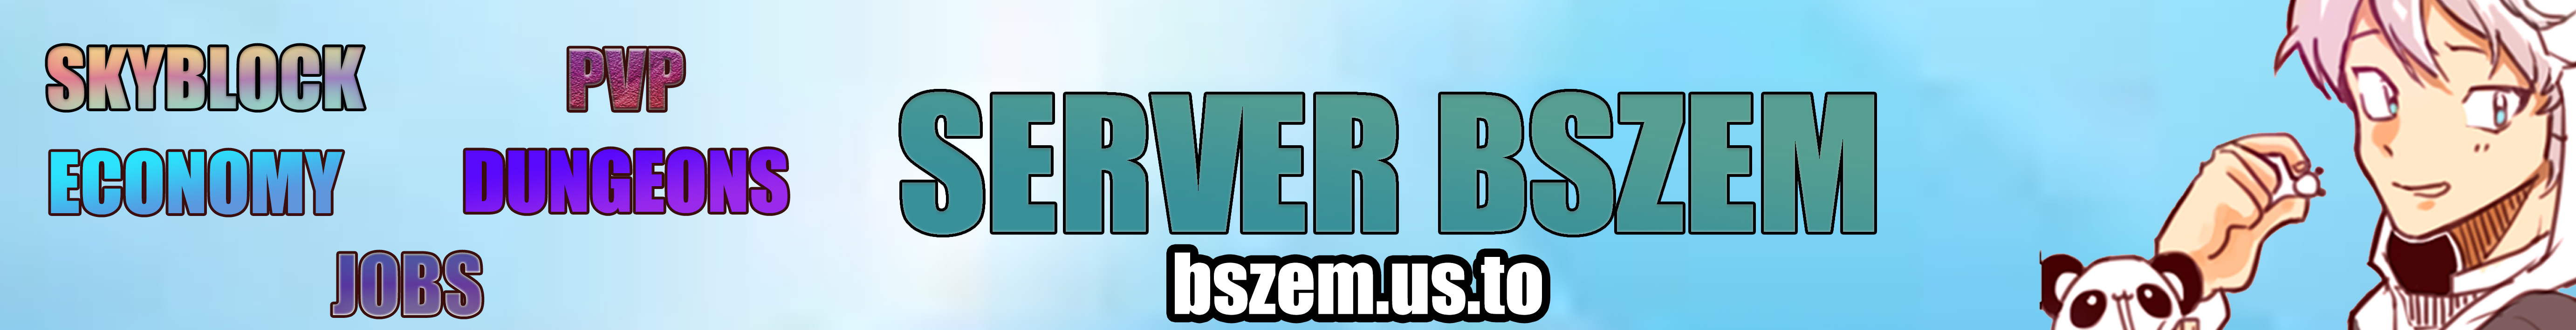 Banner for Bszem Minecraft server